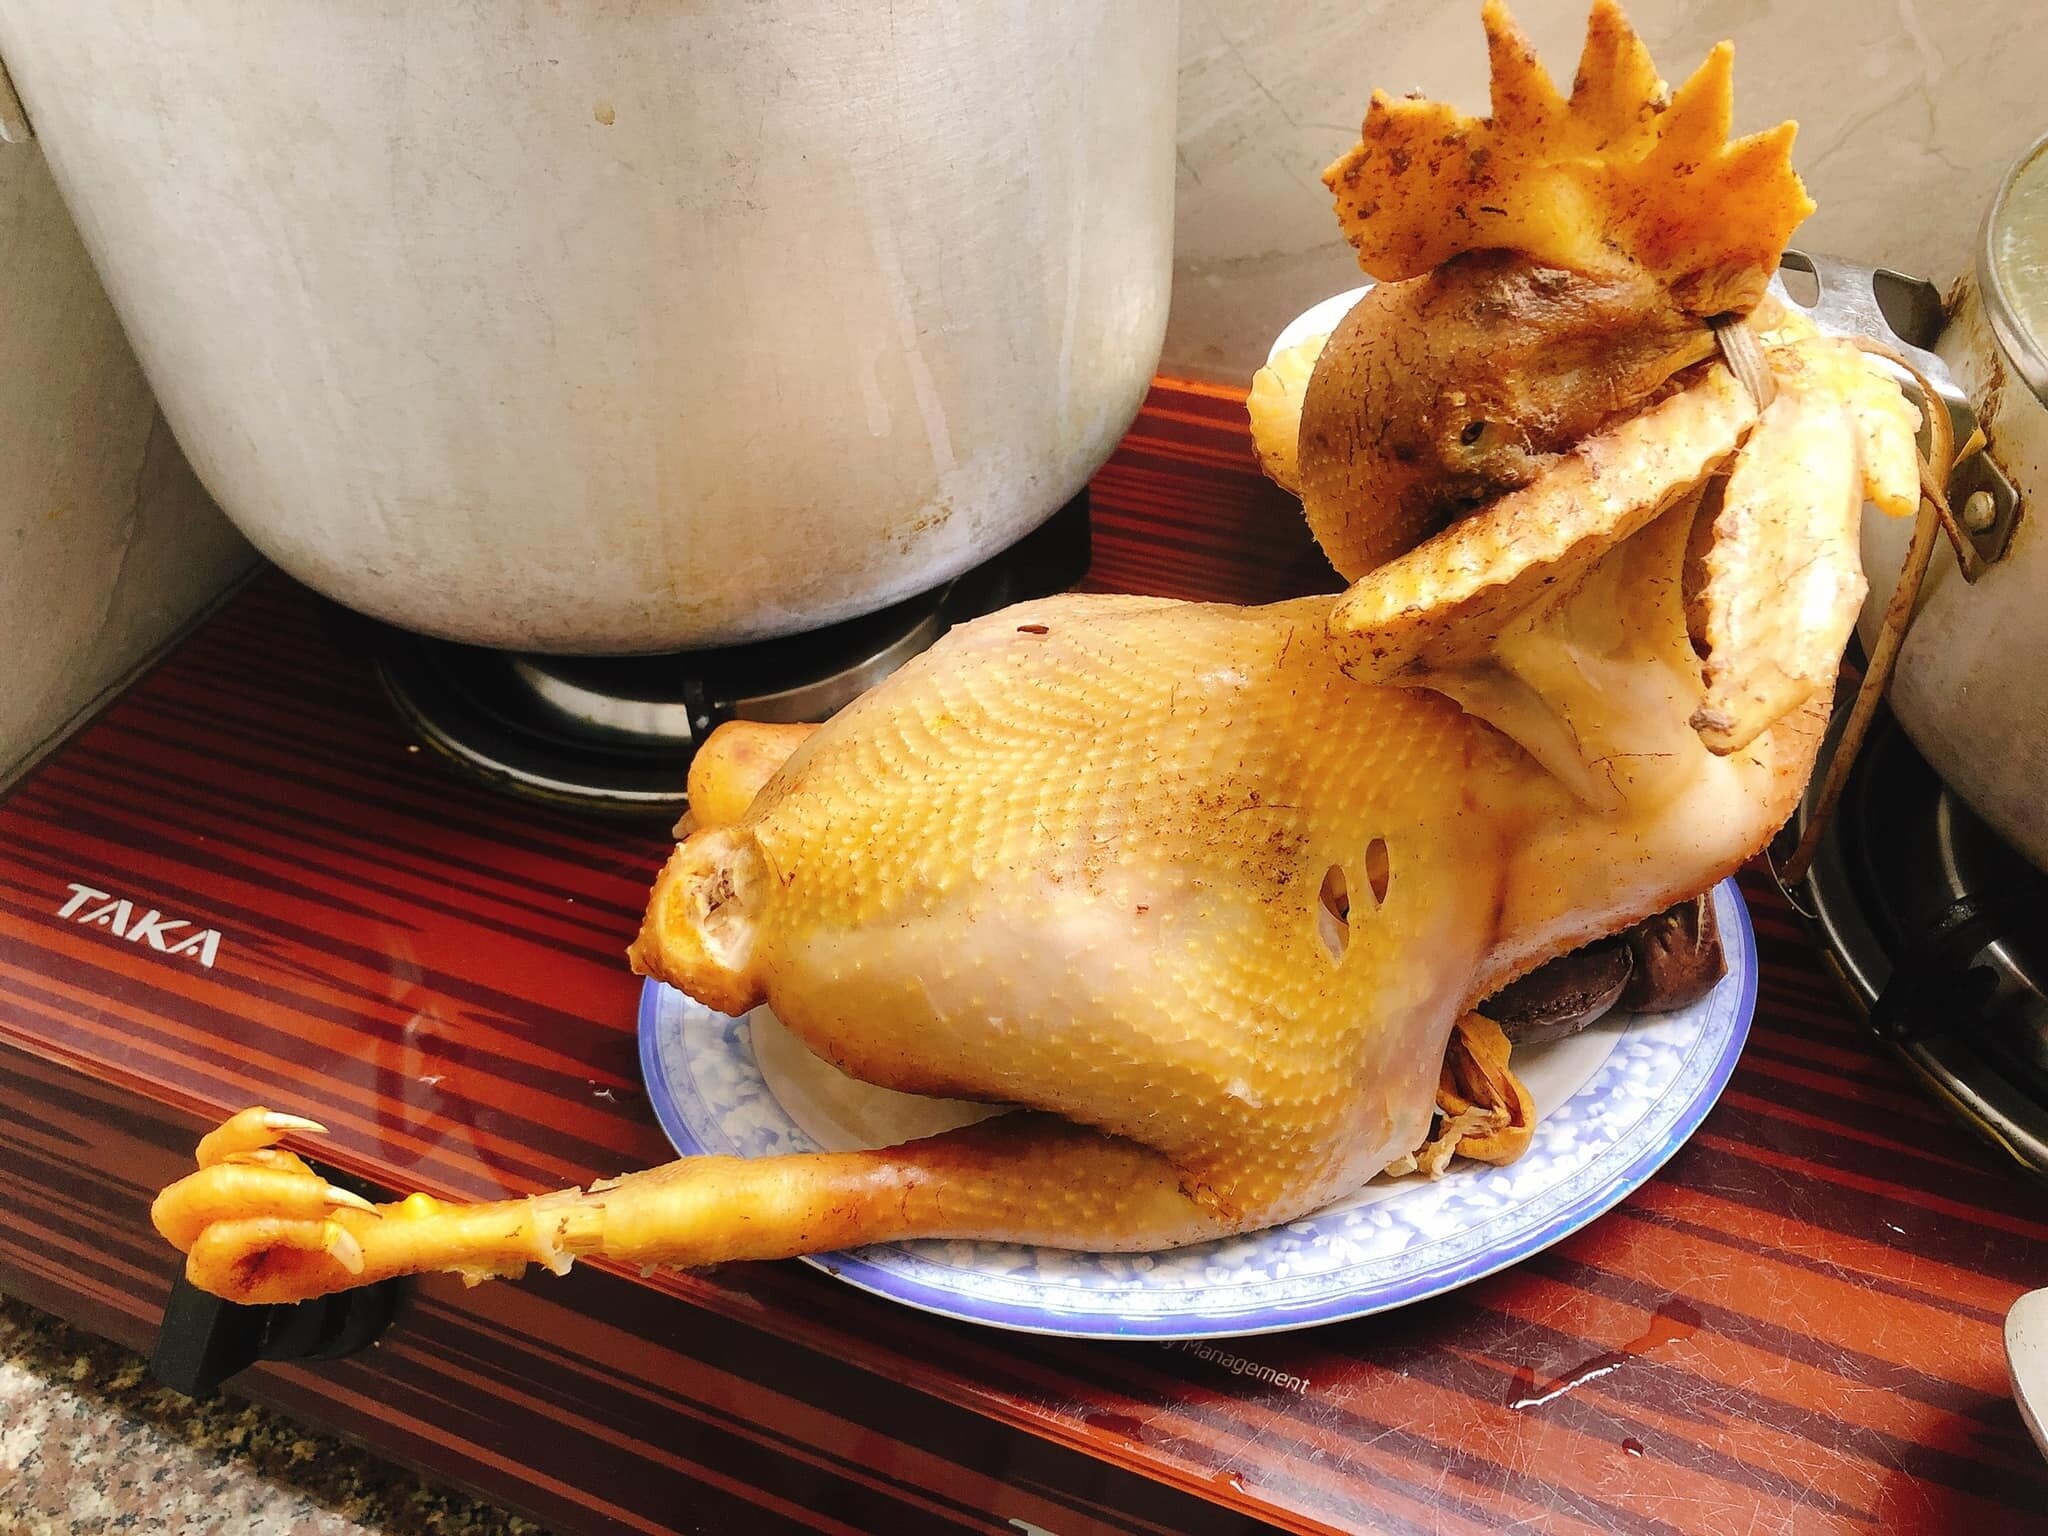 Người luộc con gà này không hiểu tại sao một chân gà lại thò ra. (Ảnh: Trương Thủy)